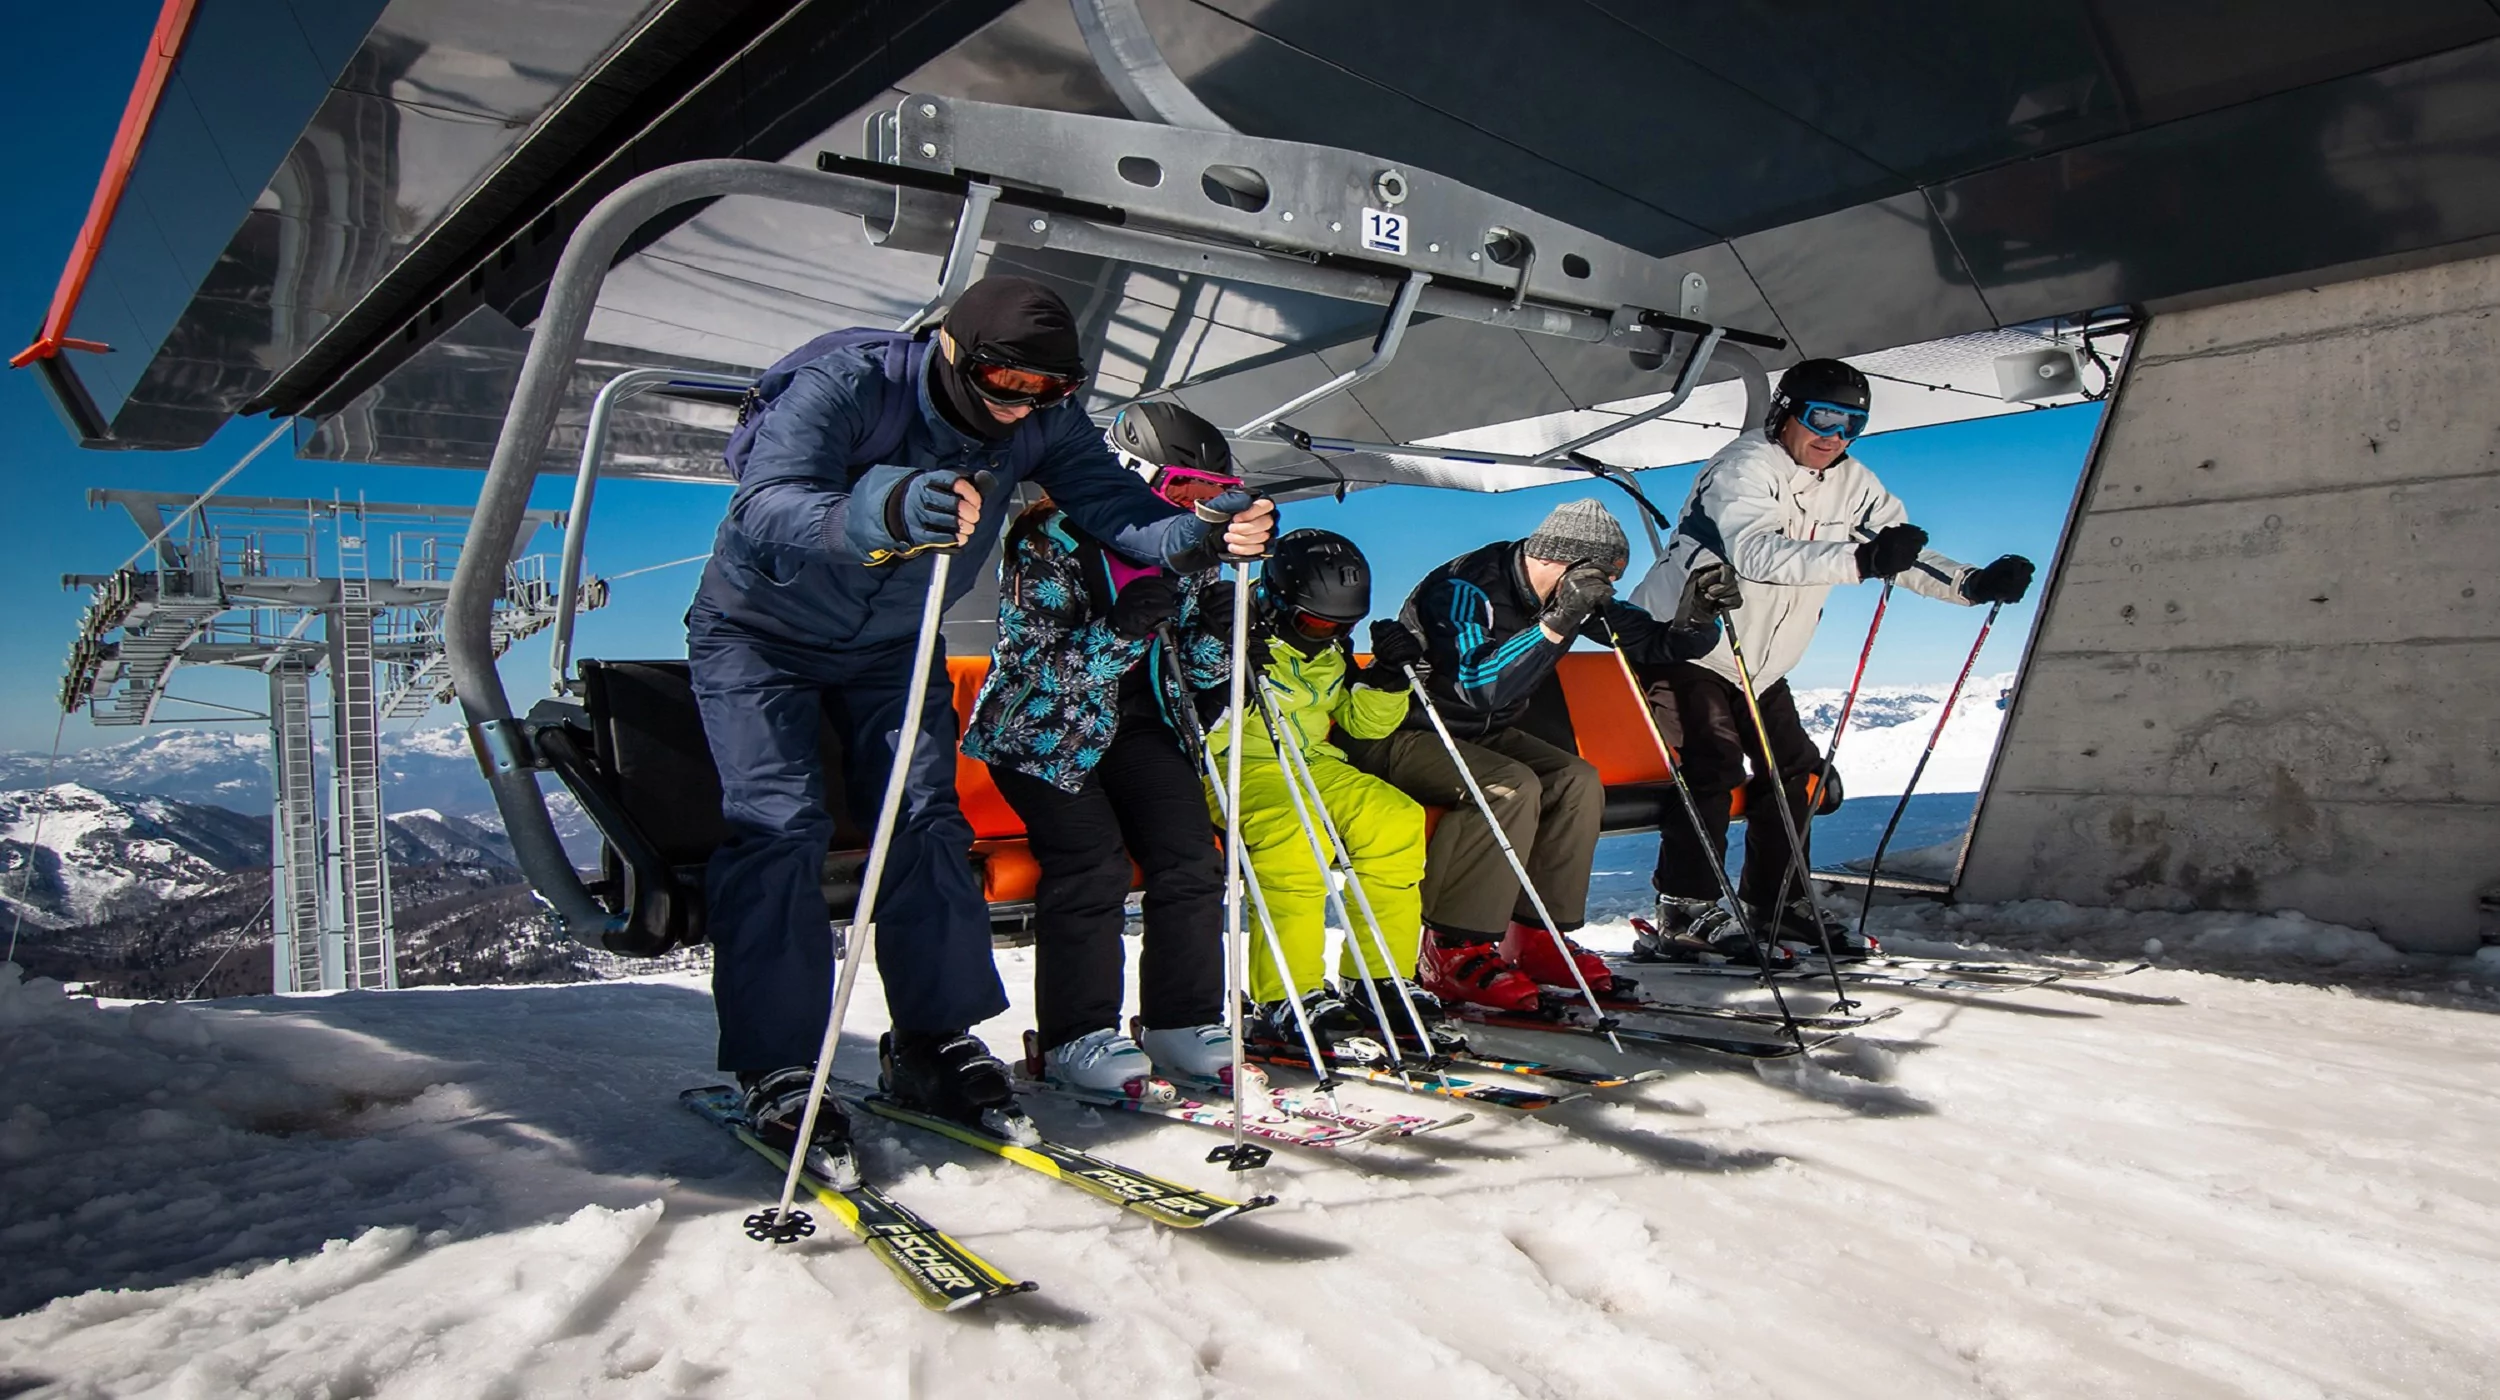 Ski lifts in Montenegro